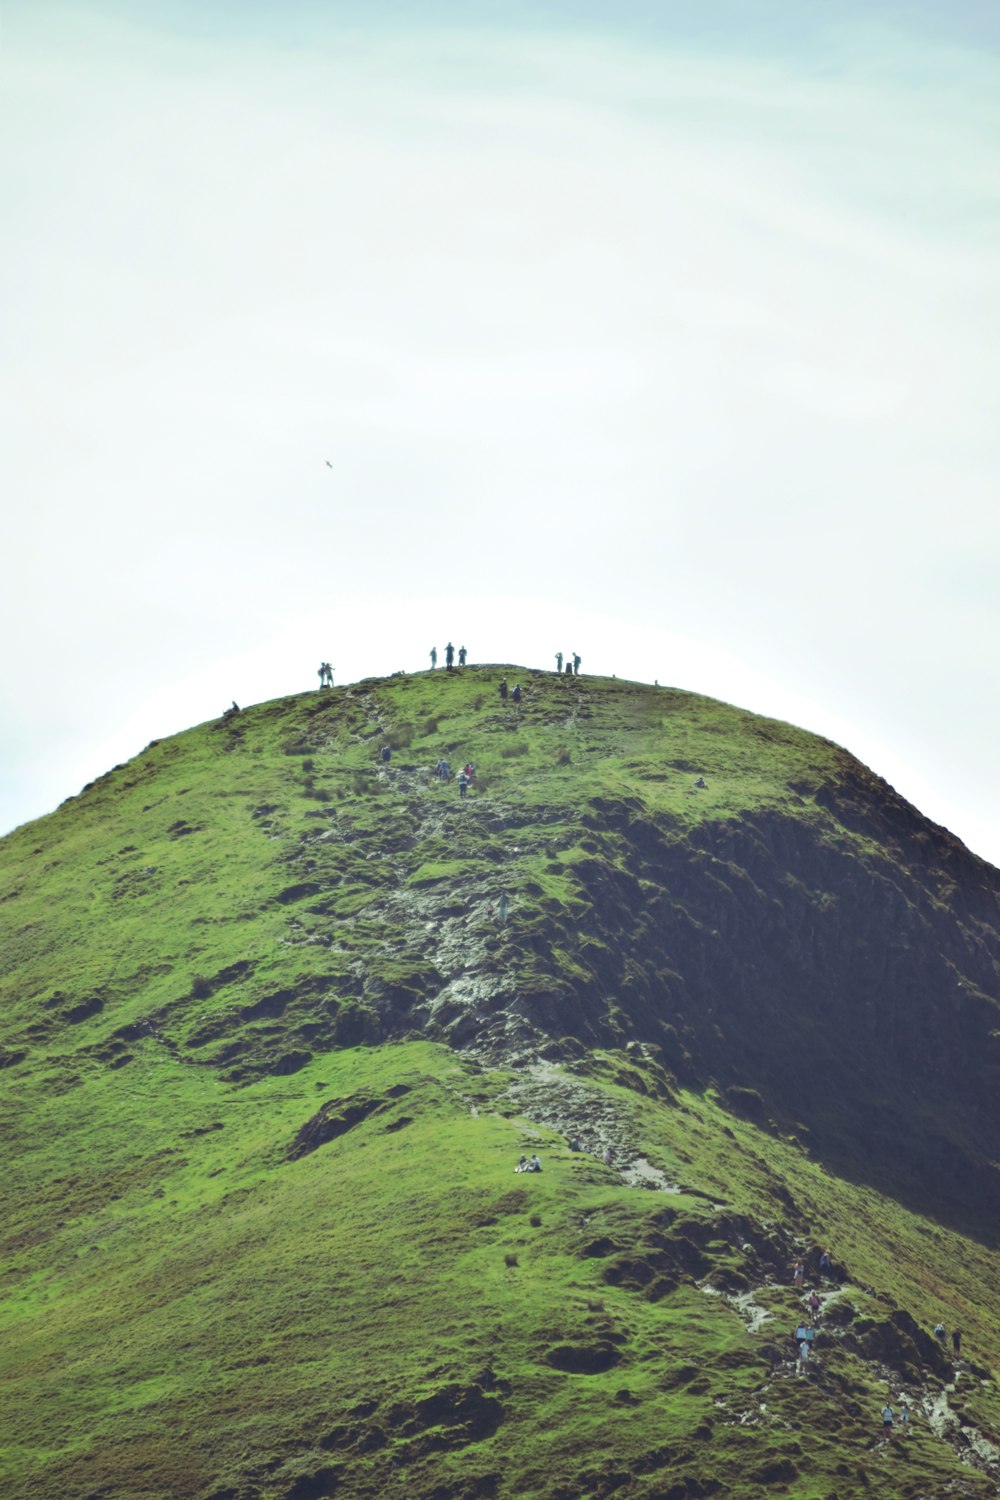 personnes debout sur la montagne verte pendant la journée